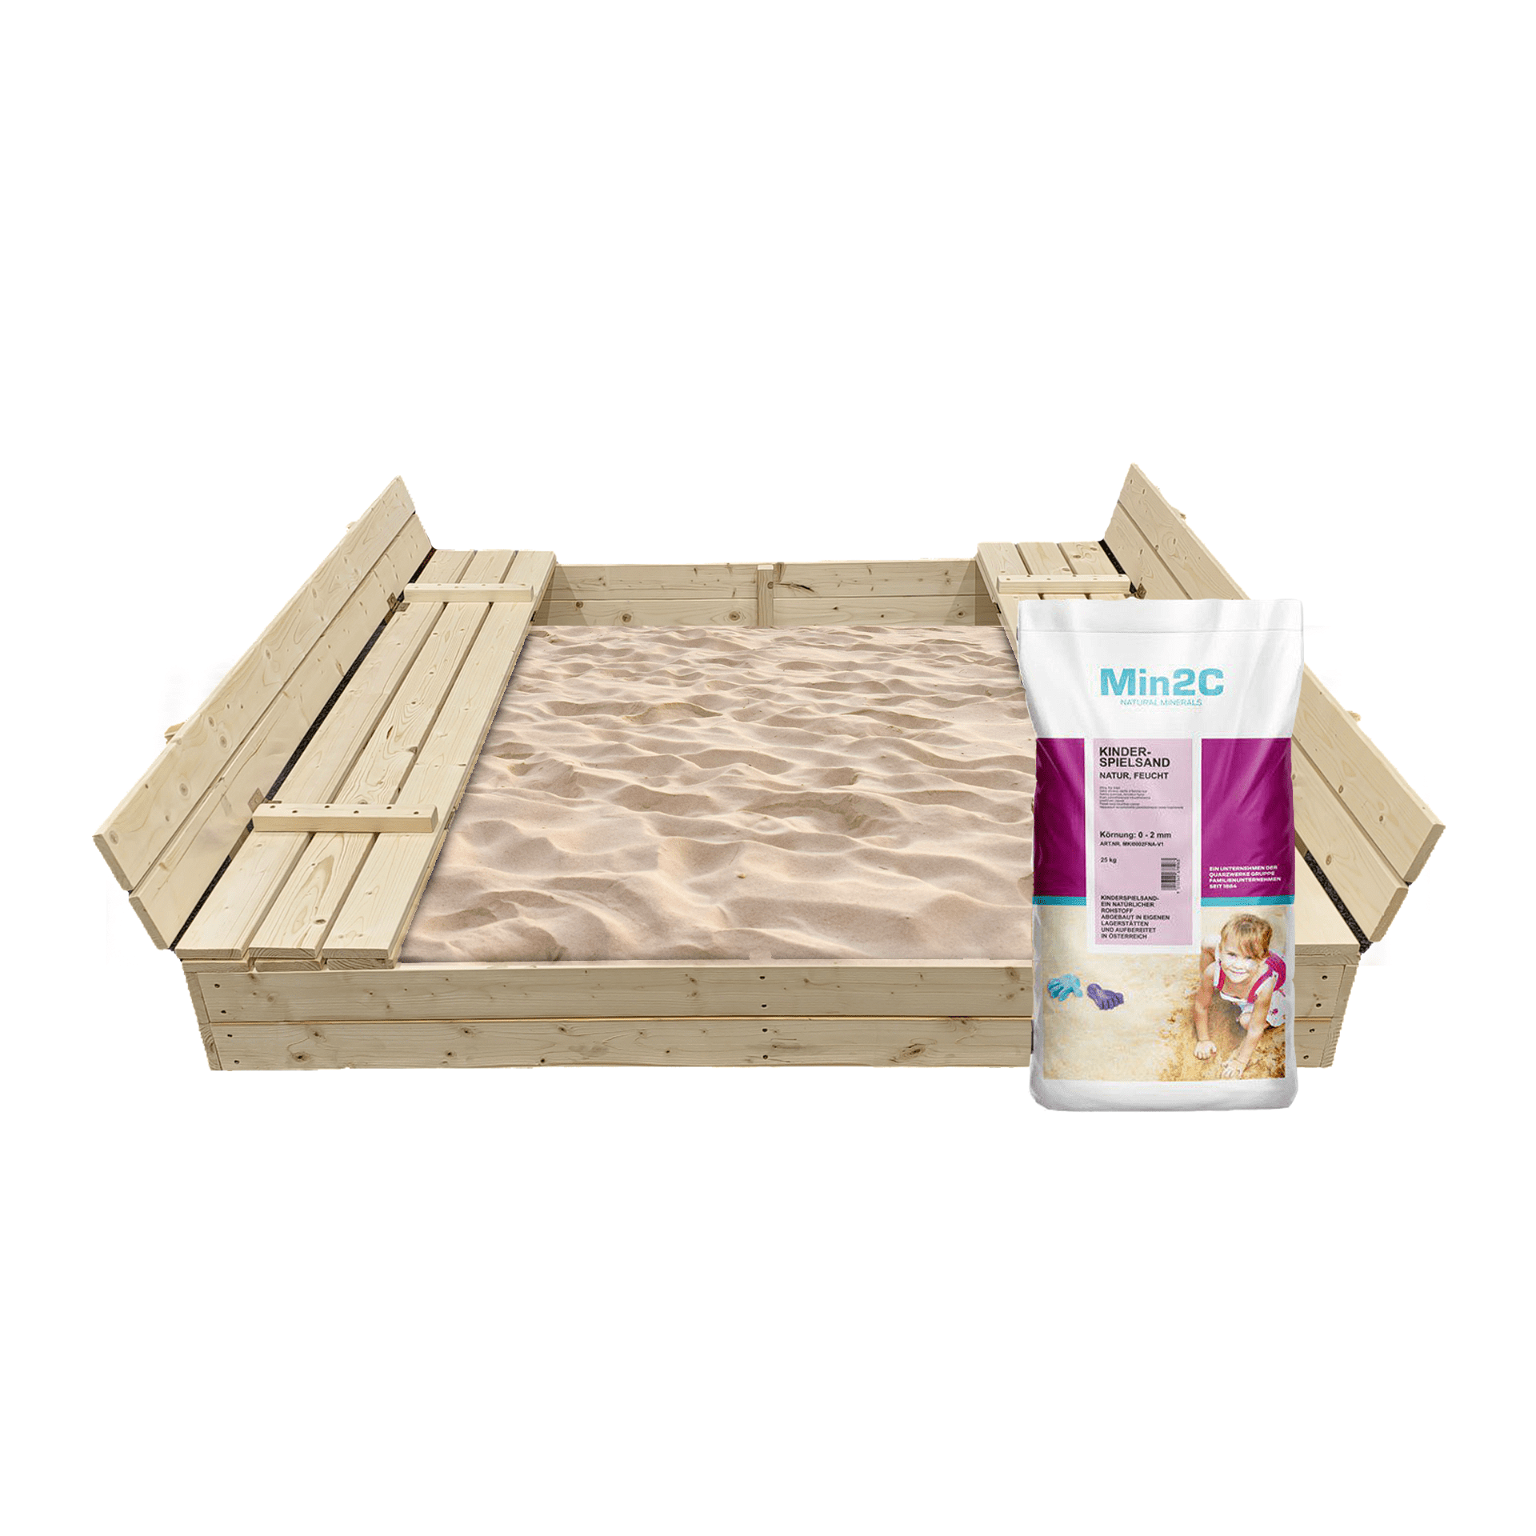 Smėlio dėžė Bonus Orbis su patiesalu ir 400 kg smėlio, 160x160 cm - 1